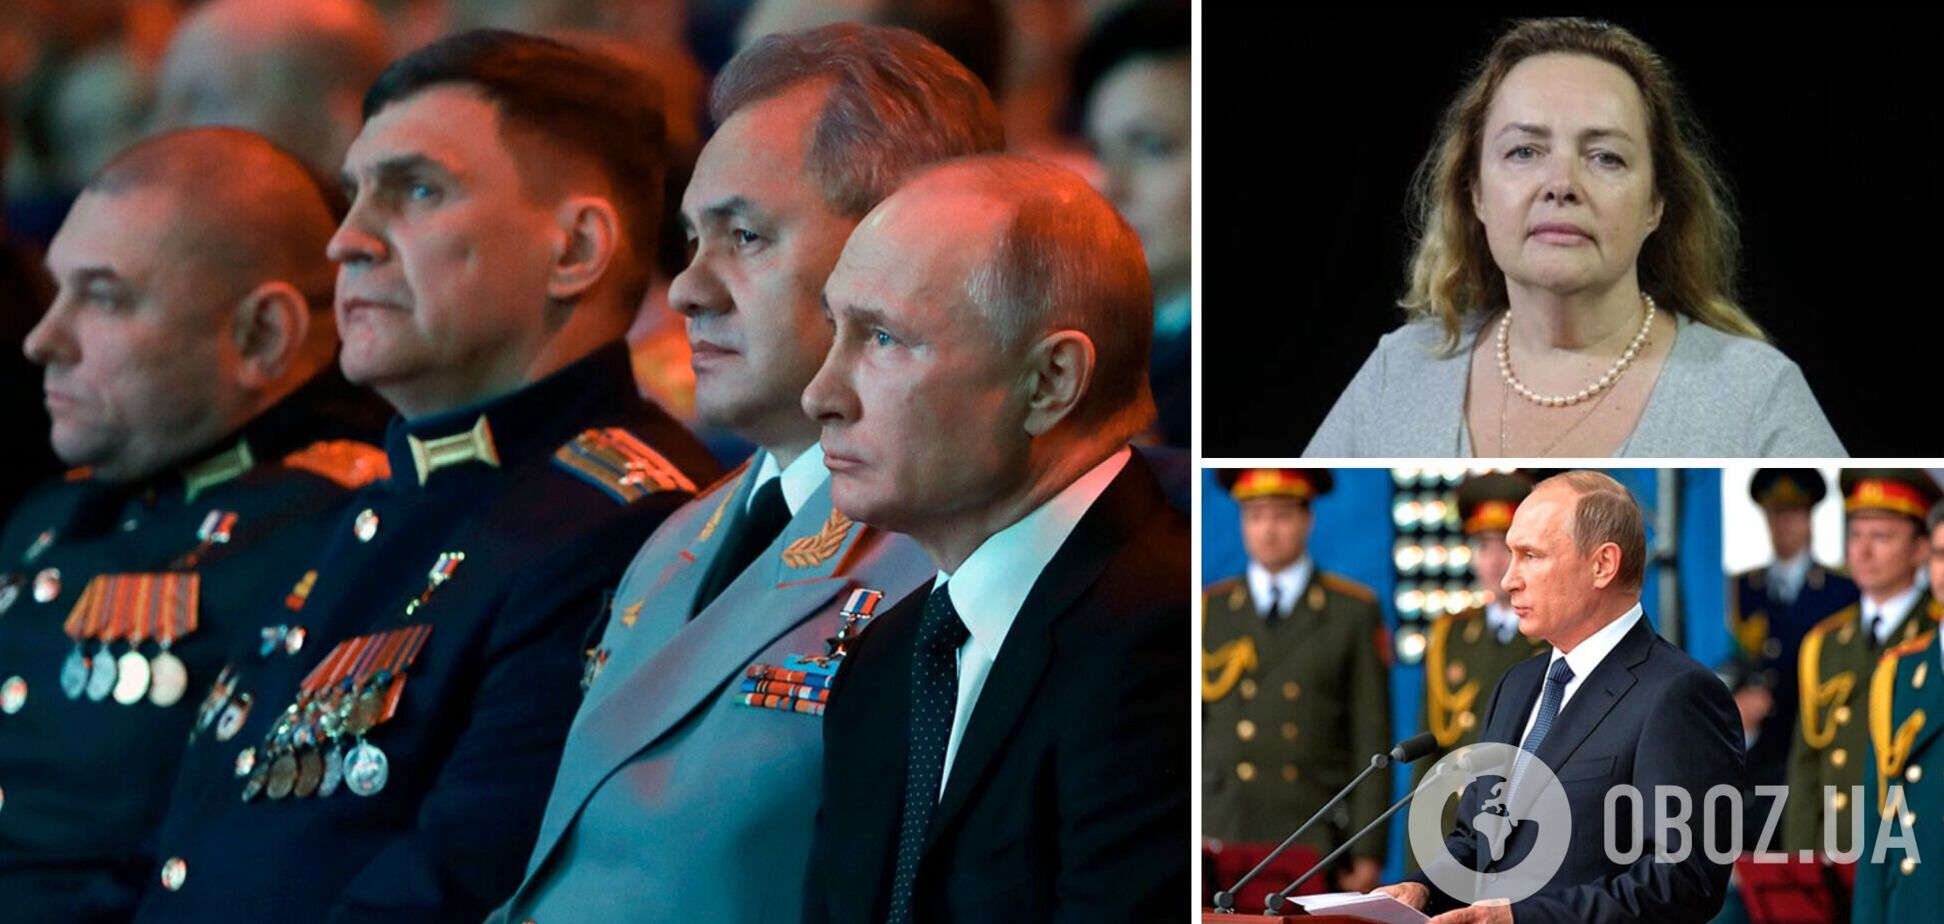 Курносова: страх пронизал все высшее руководство РФ, у Путина остался последний шанс выйти из войны без потерь. Интервью